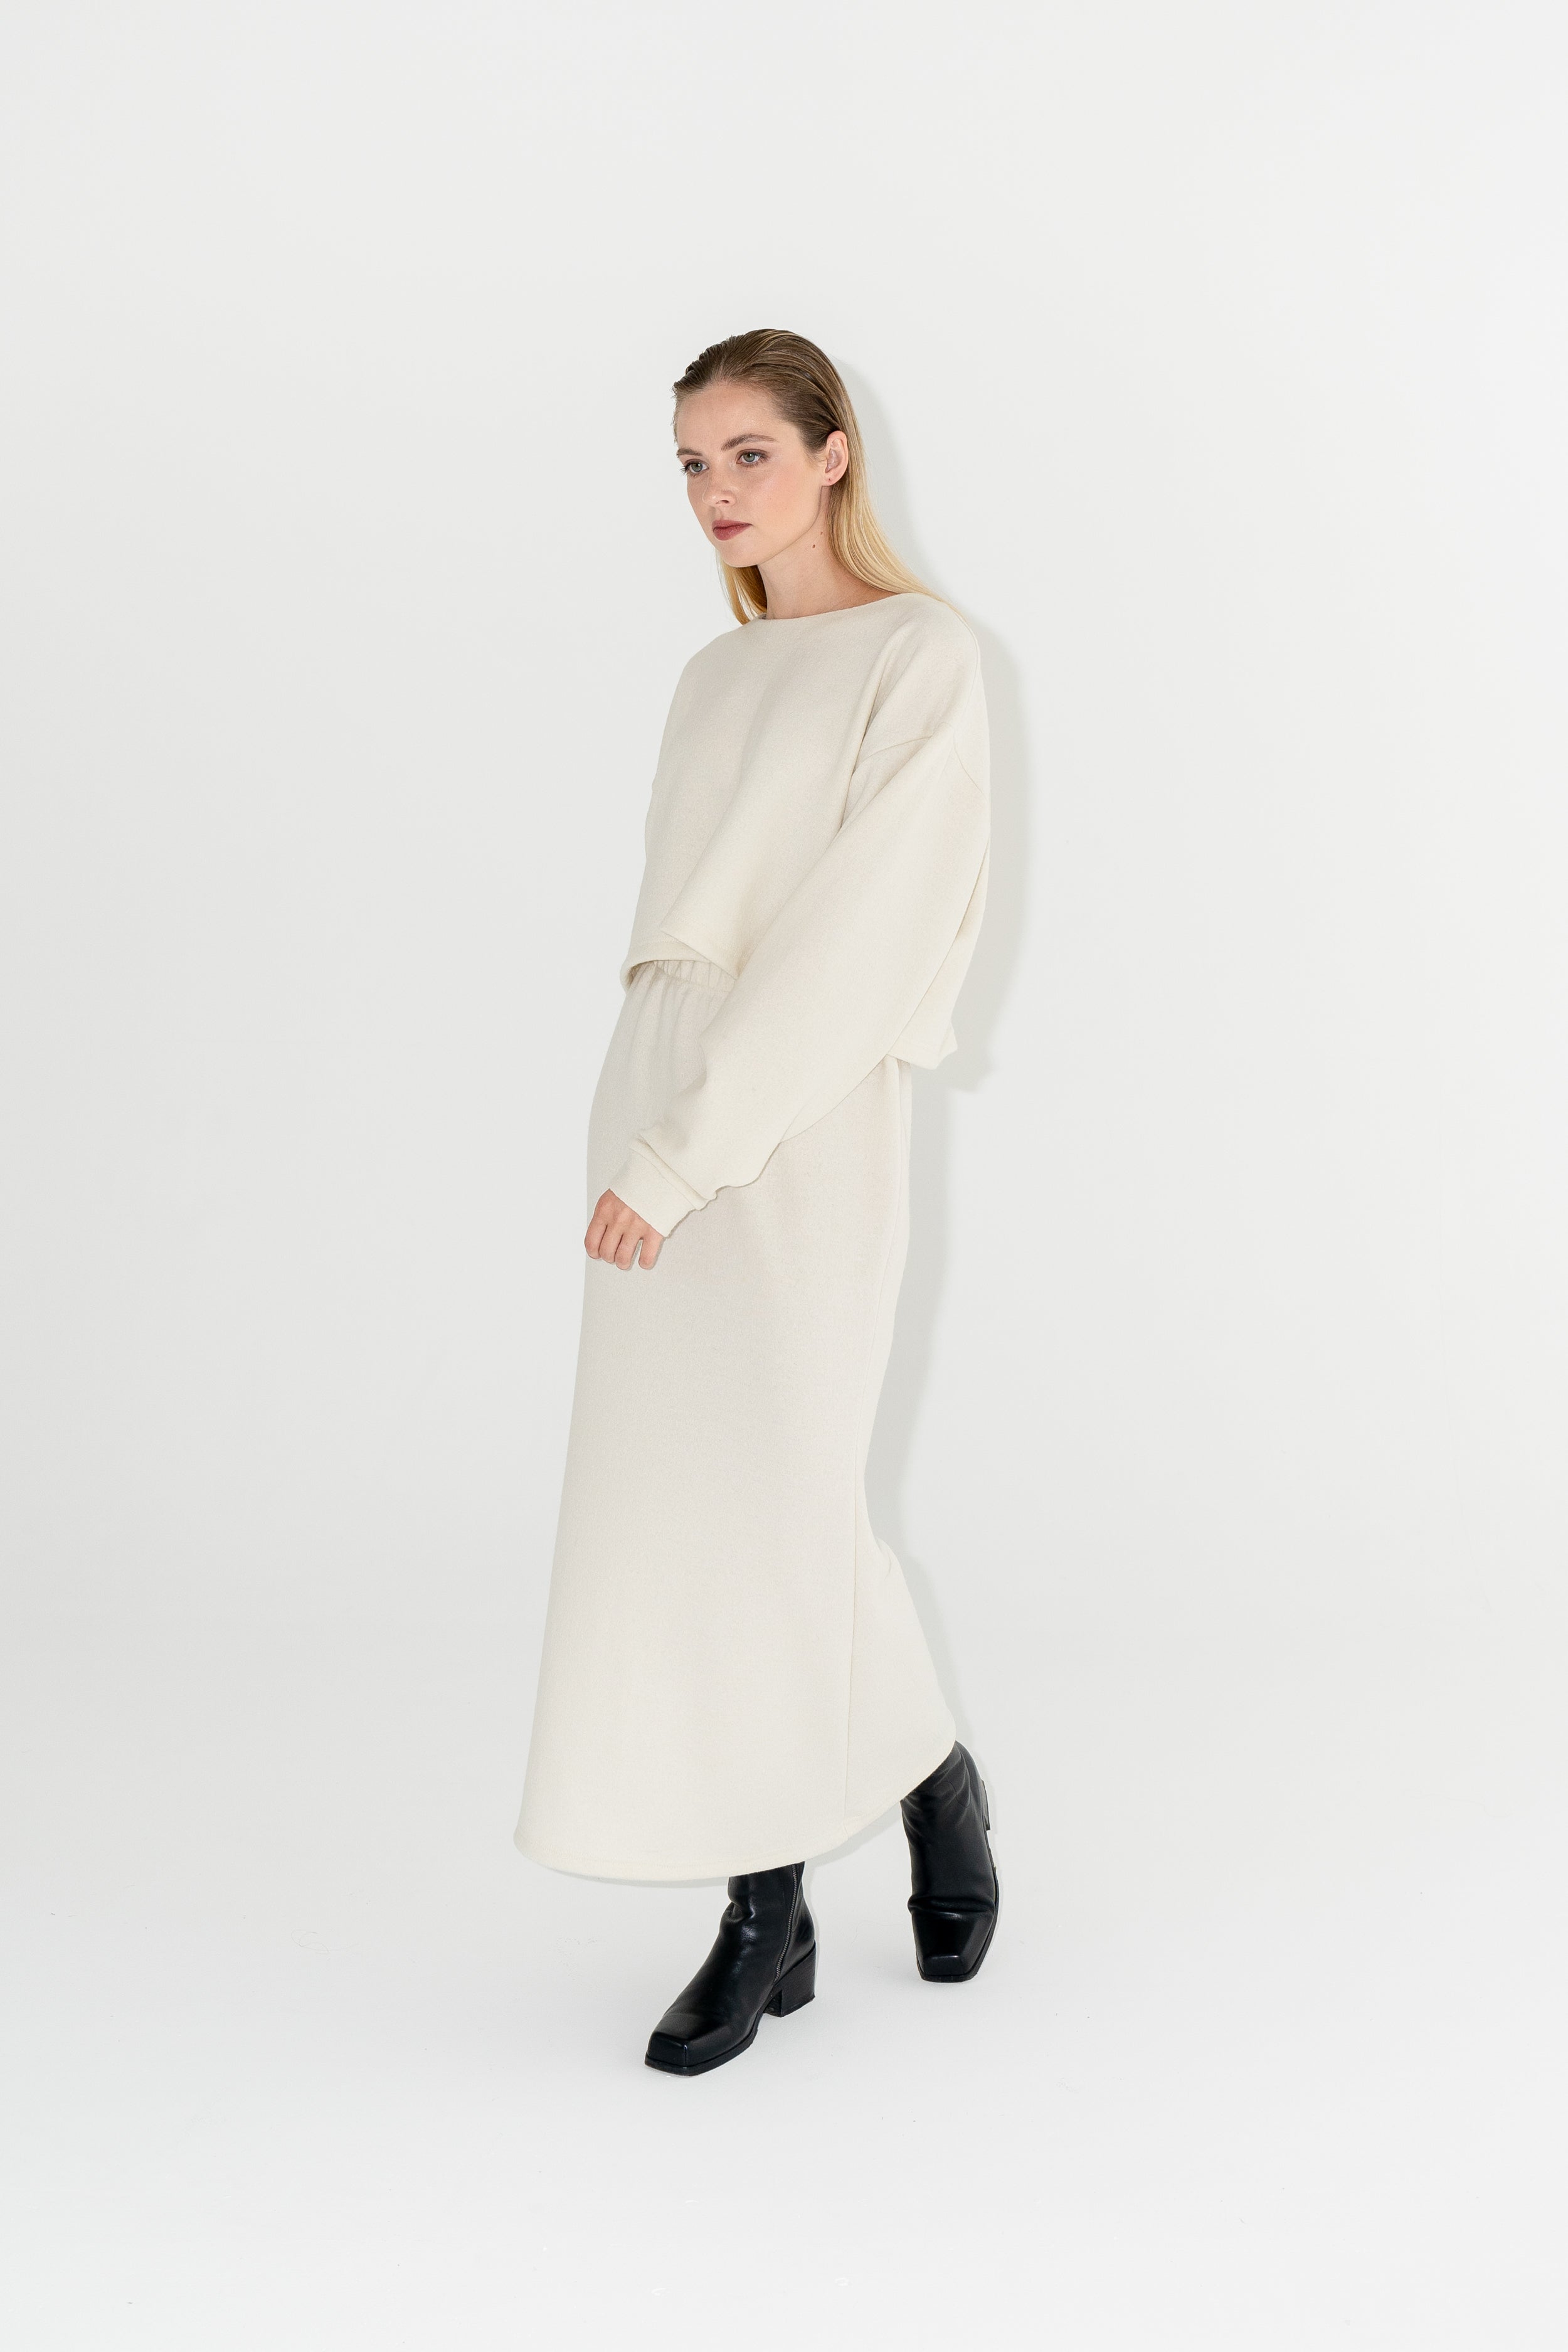 Dámský bílý set zvonkové sukně a boxy svetru s širokými rukávy z organické merino vlny s černými kozačkami.